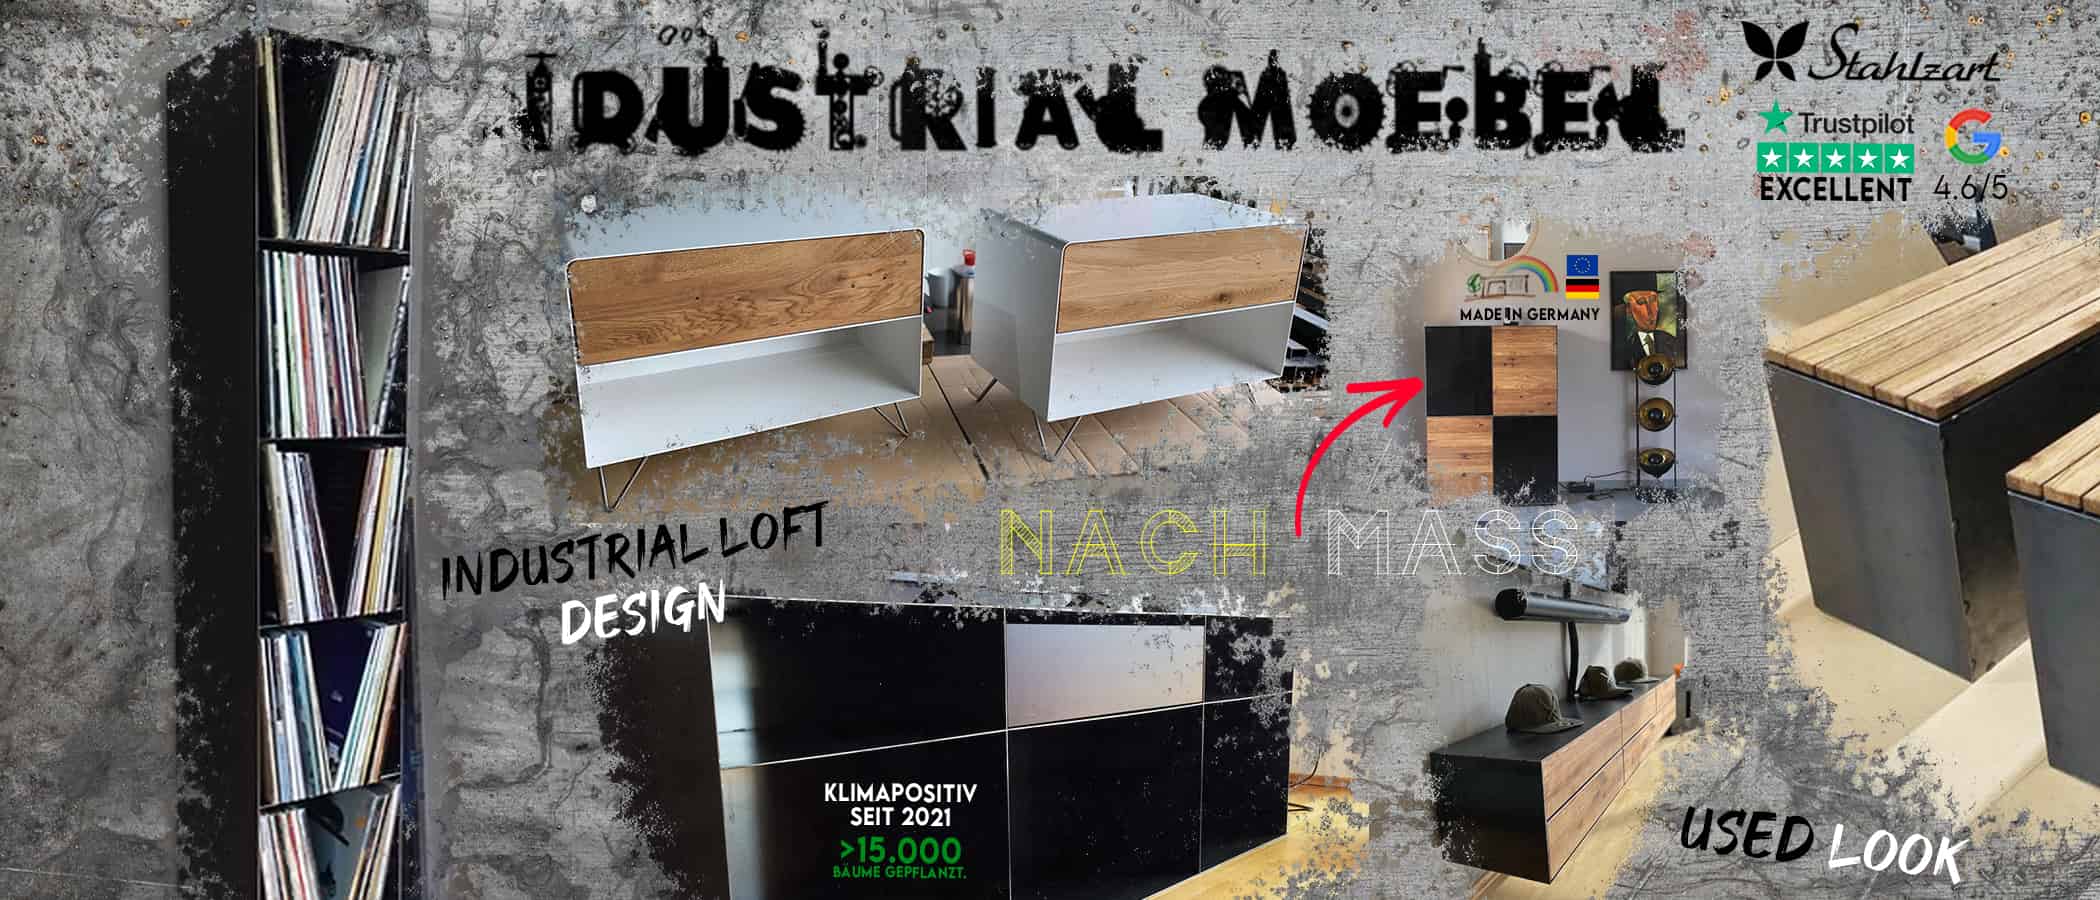 industrial-moebel-industrial-style-stil-used-look-metall-loft-holz-design-moebeln-schwarz-glas-braun-charme-wohnzimmer-esstisch-regal-schlafzimmer-sideboard-couchtisch-stahlzart